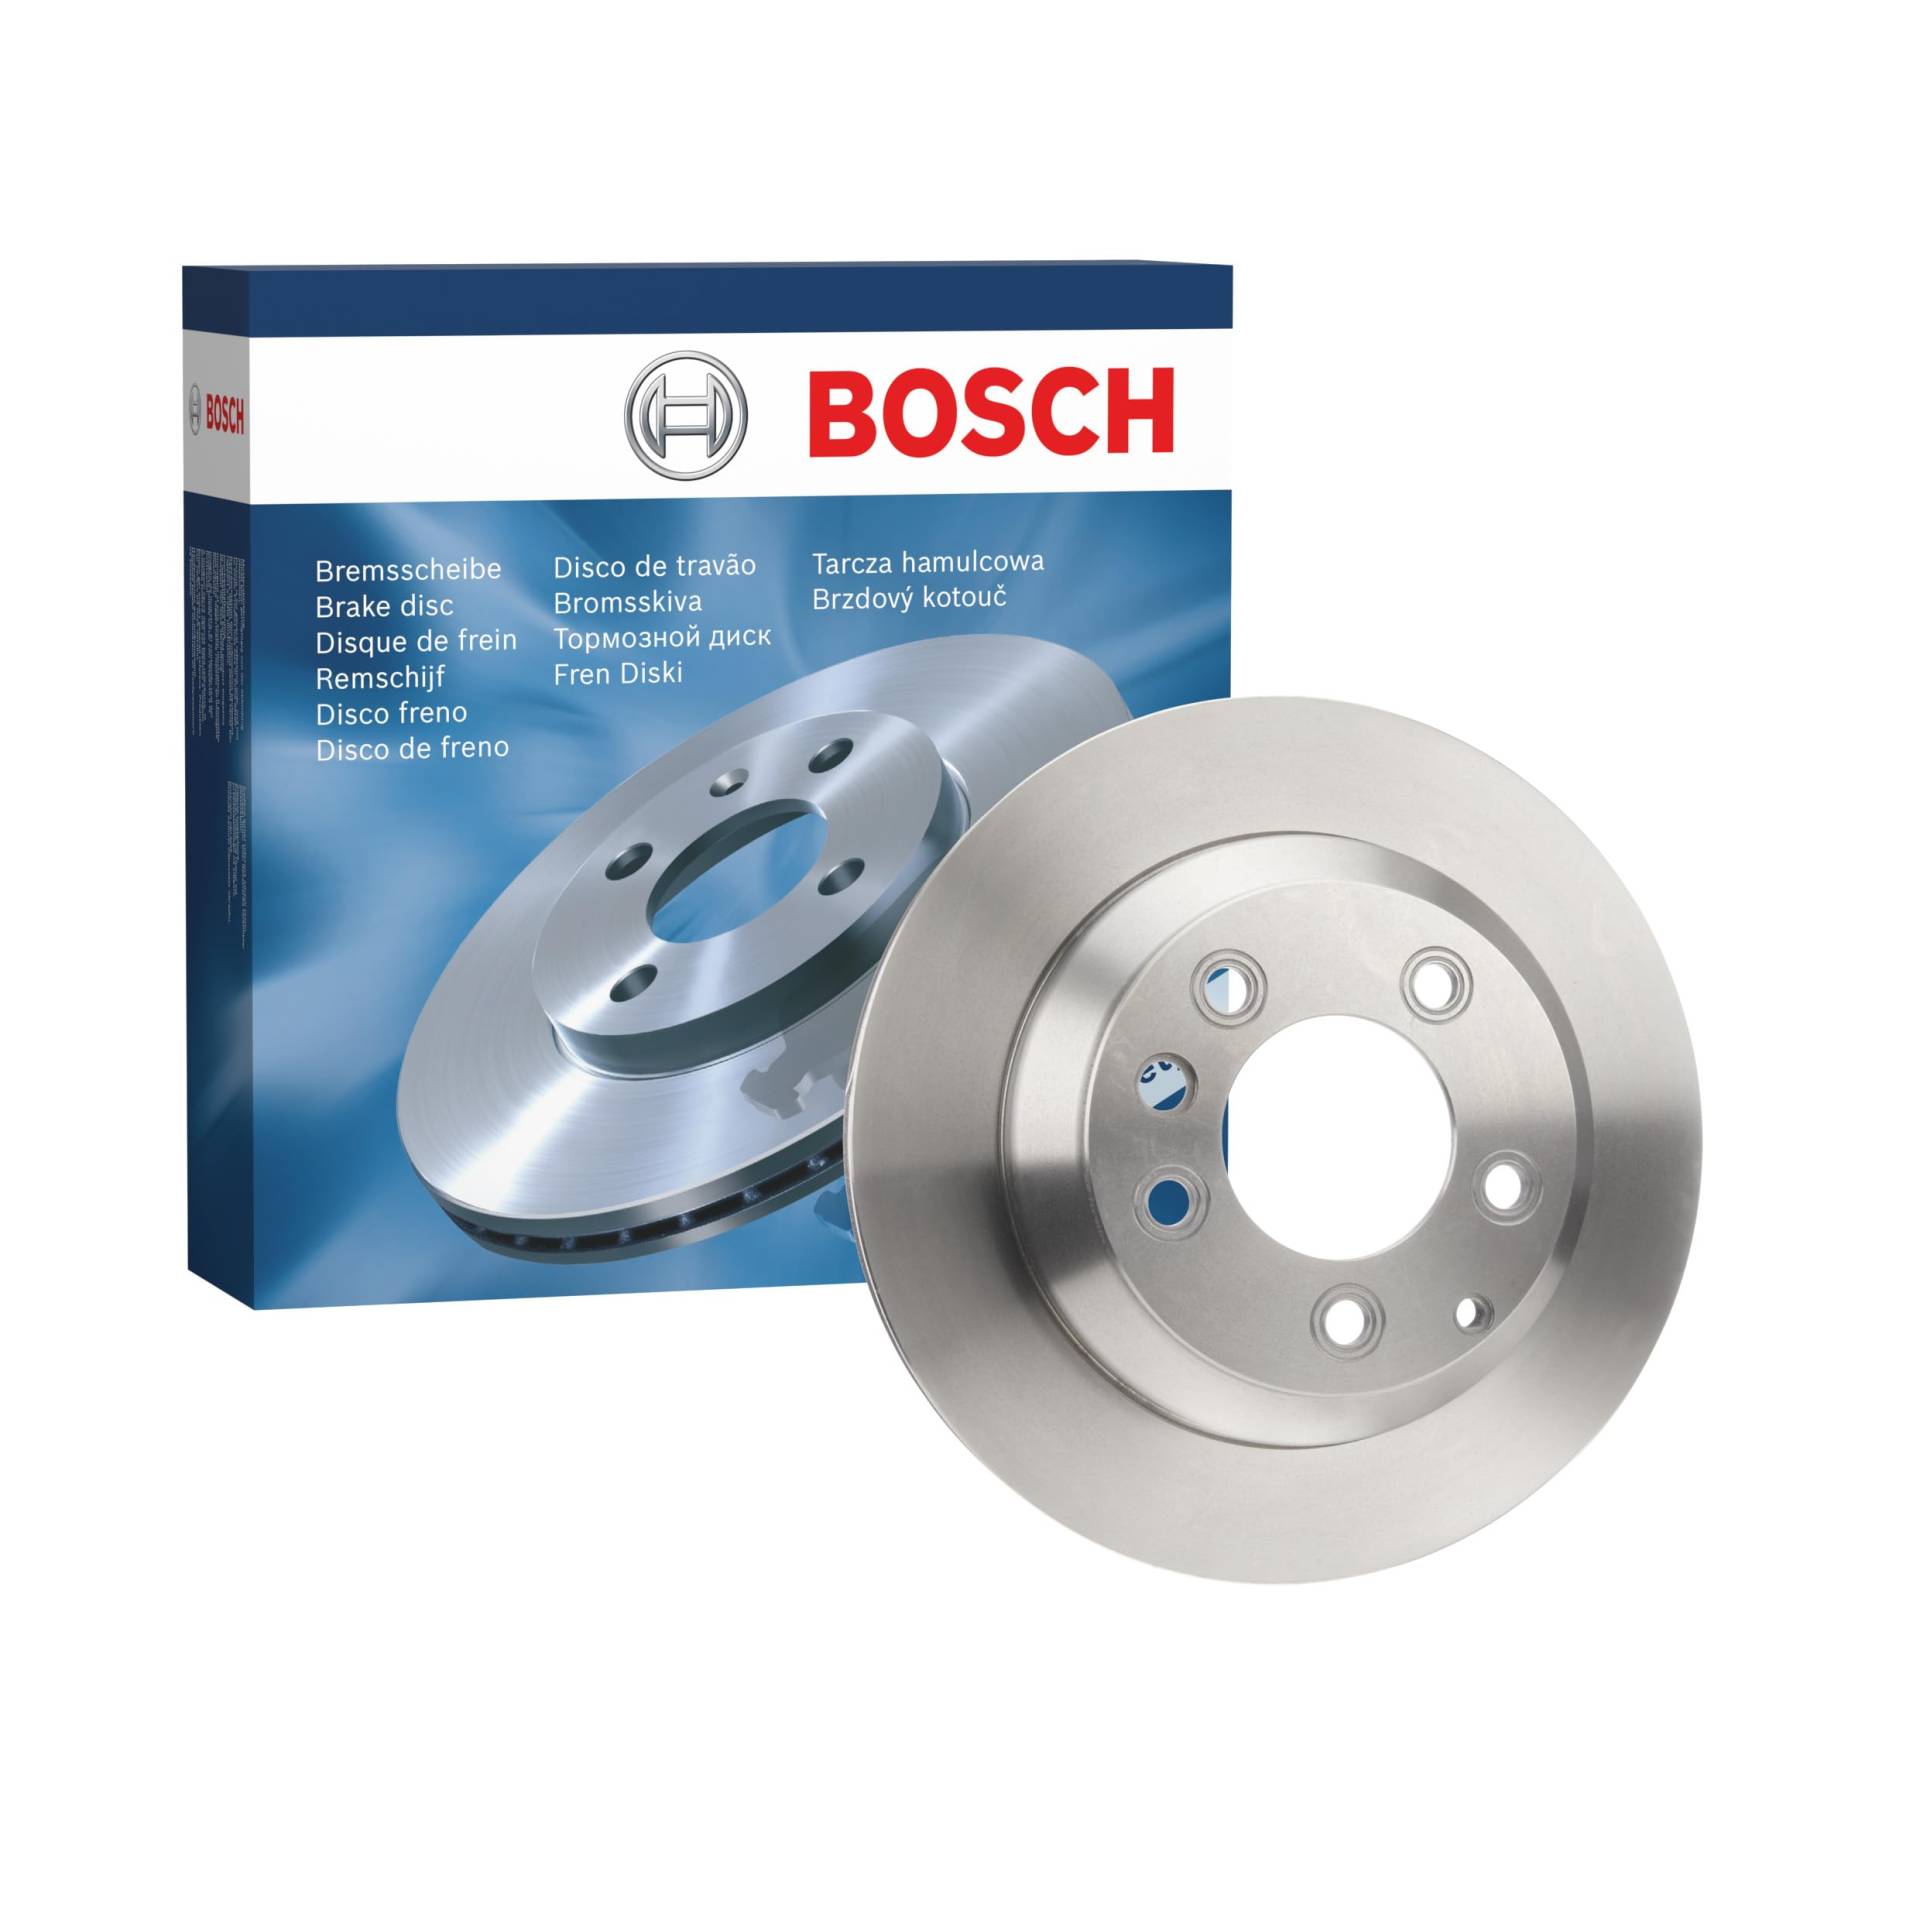 Bosch BD1915 Bremsscheiben - Hinterachse - ECE-R90 Zertifizierung - eine Bremsscheibe von Bosch Automotive